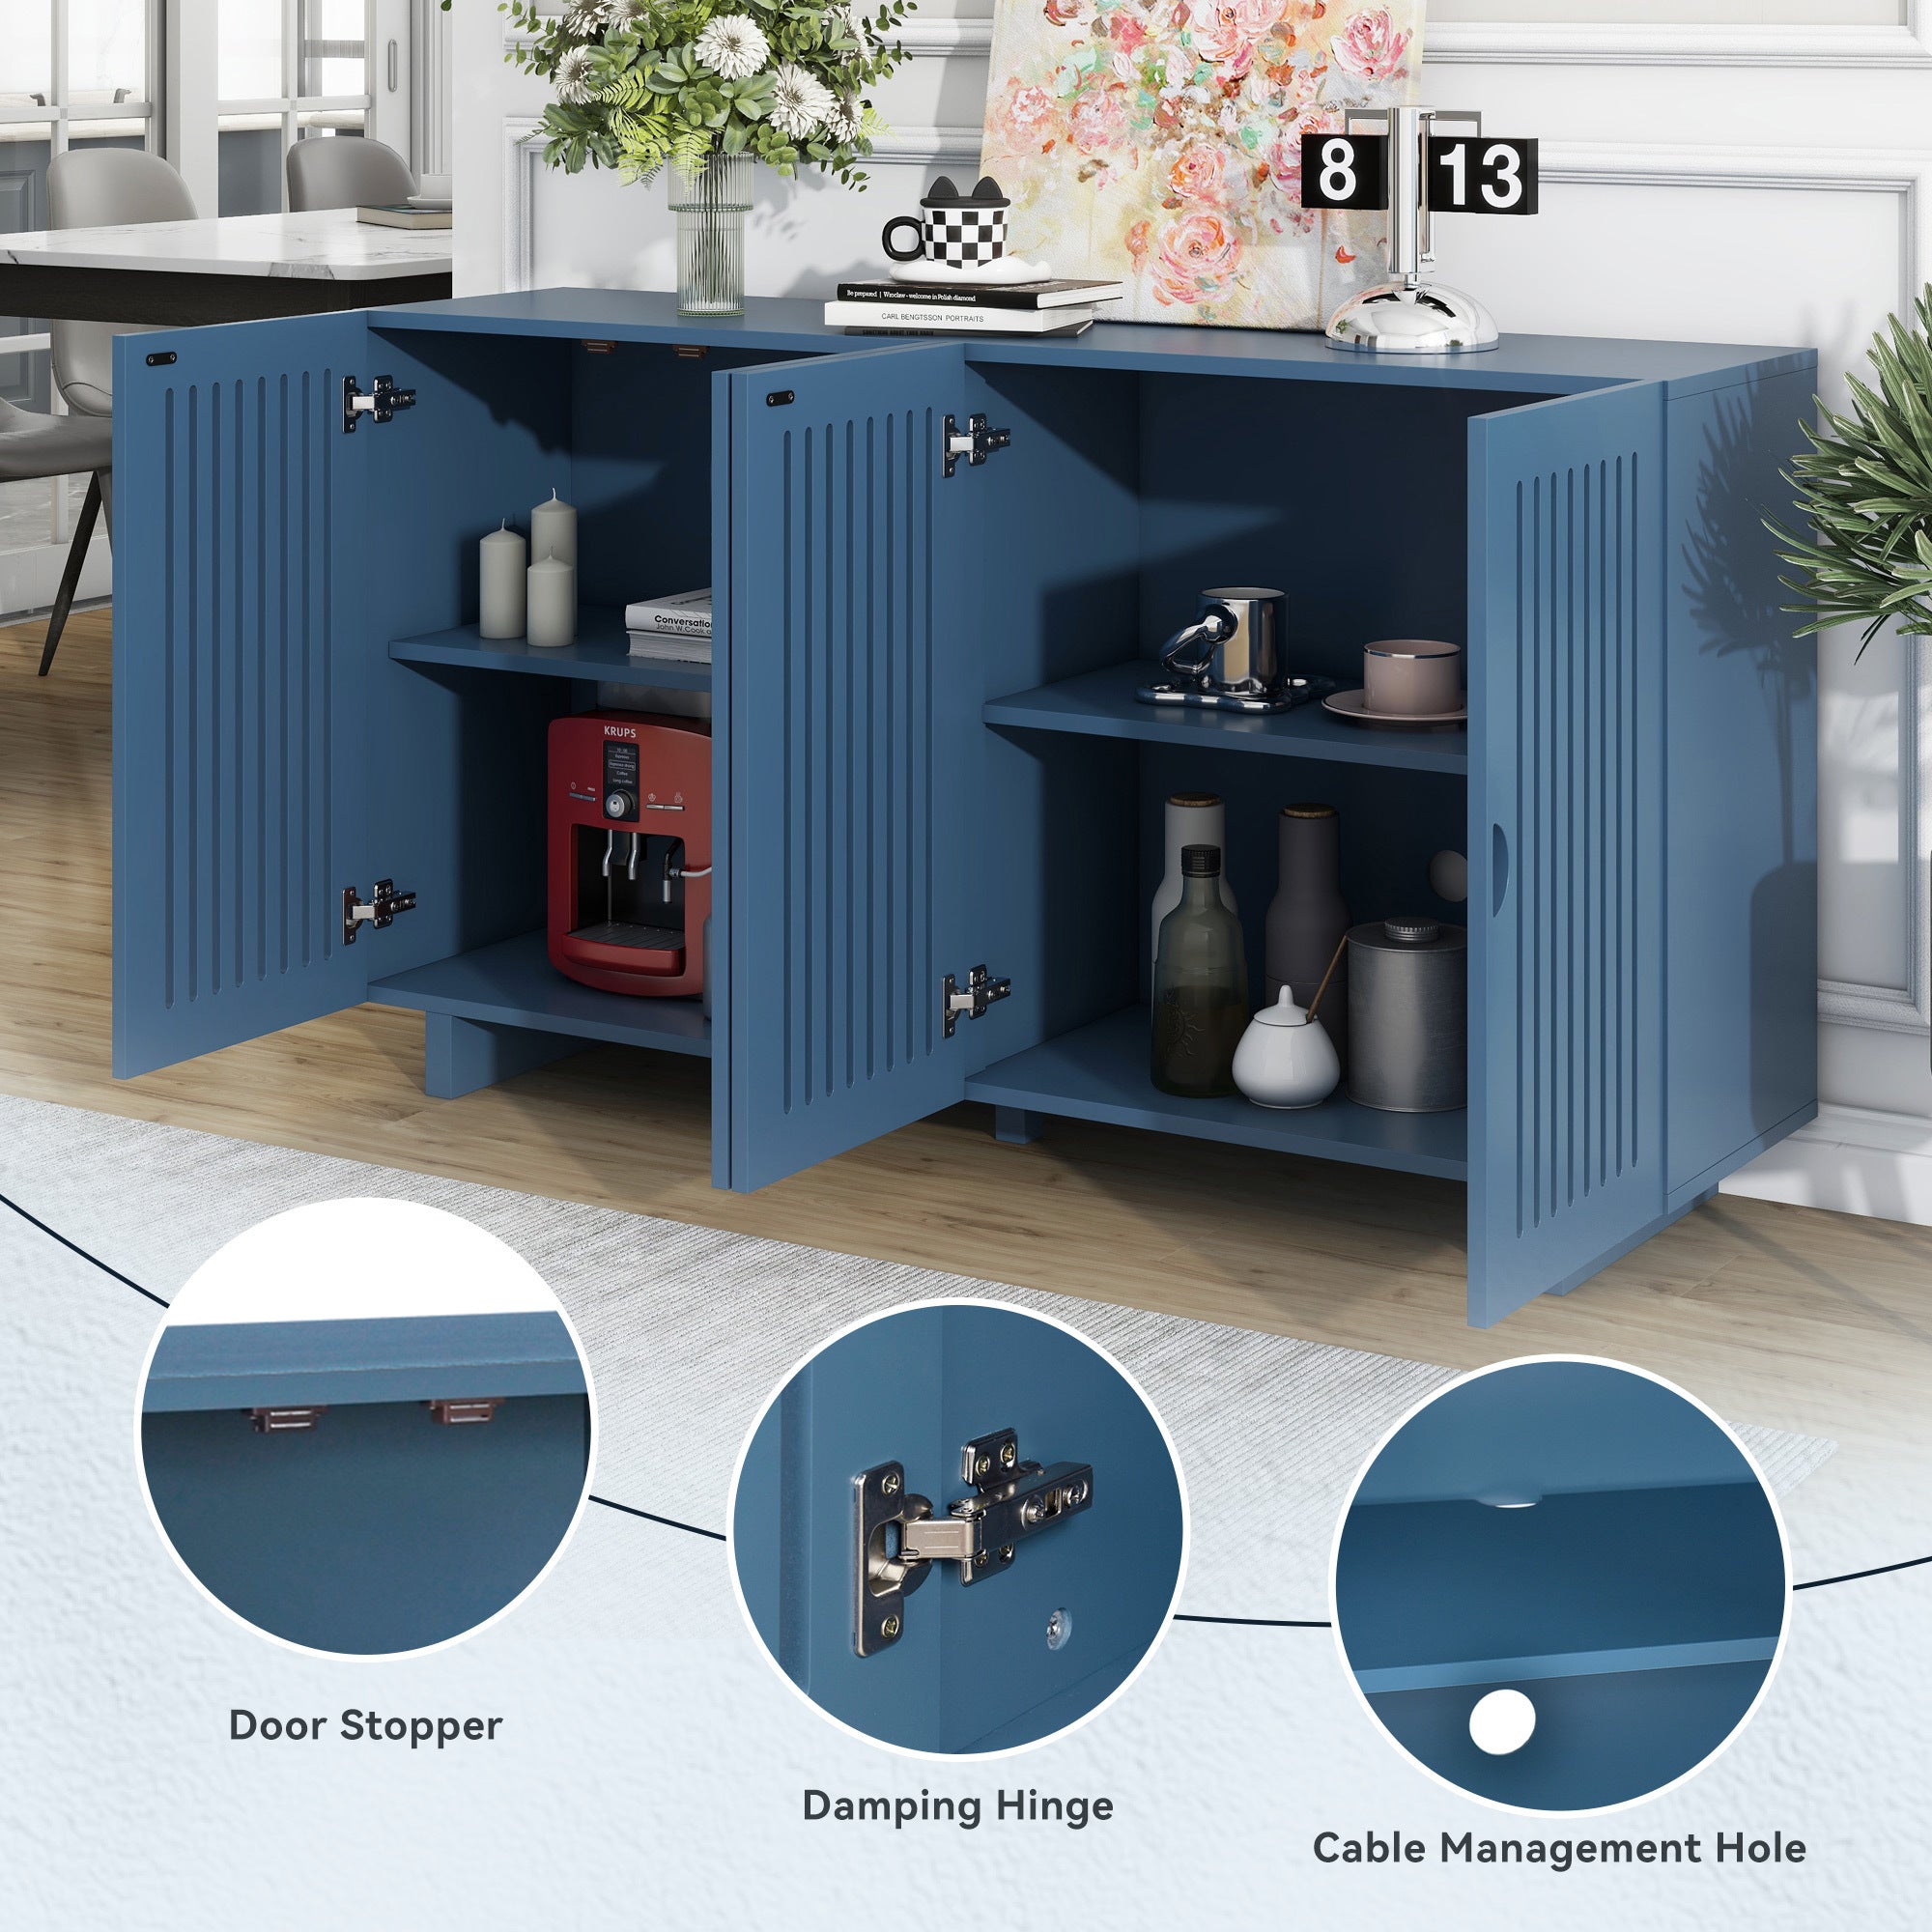 Modern Style Sideboard with Superior Storage navy blue-dining room-adjustabel shelves-mdf